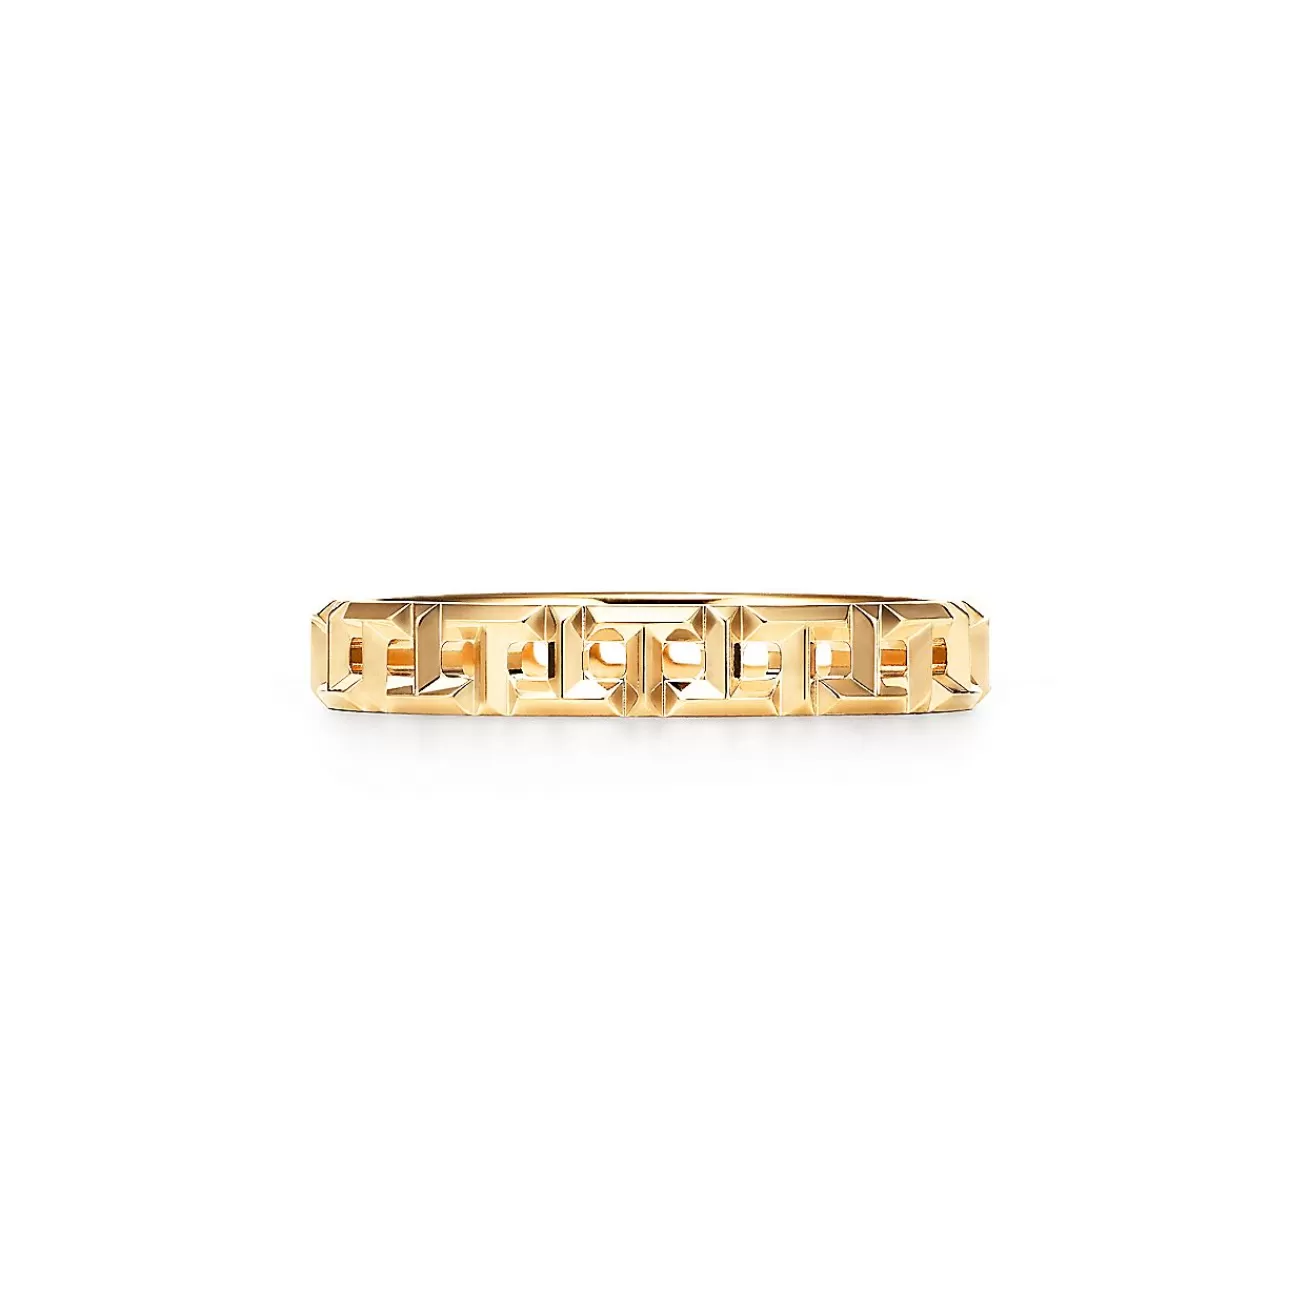 Tiffany & Co. Tiffany T True narrow ring in 18k gold, 3.5 mm wide. | ^Women Rings | Men's Jewelry